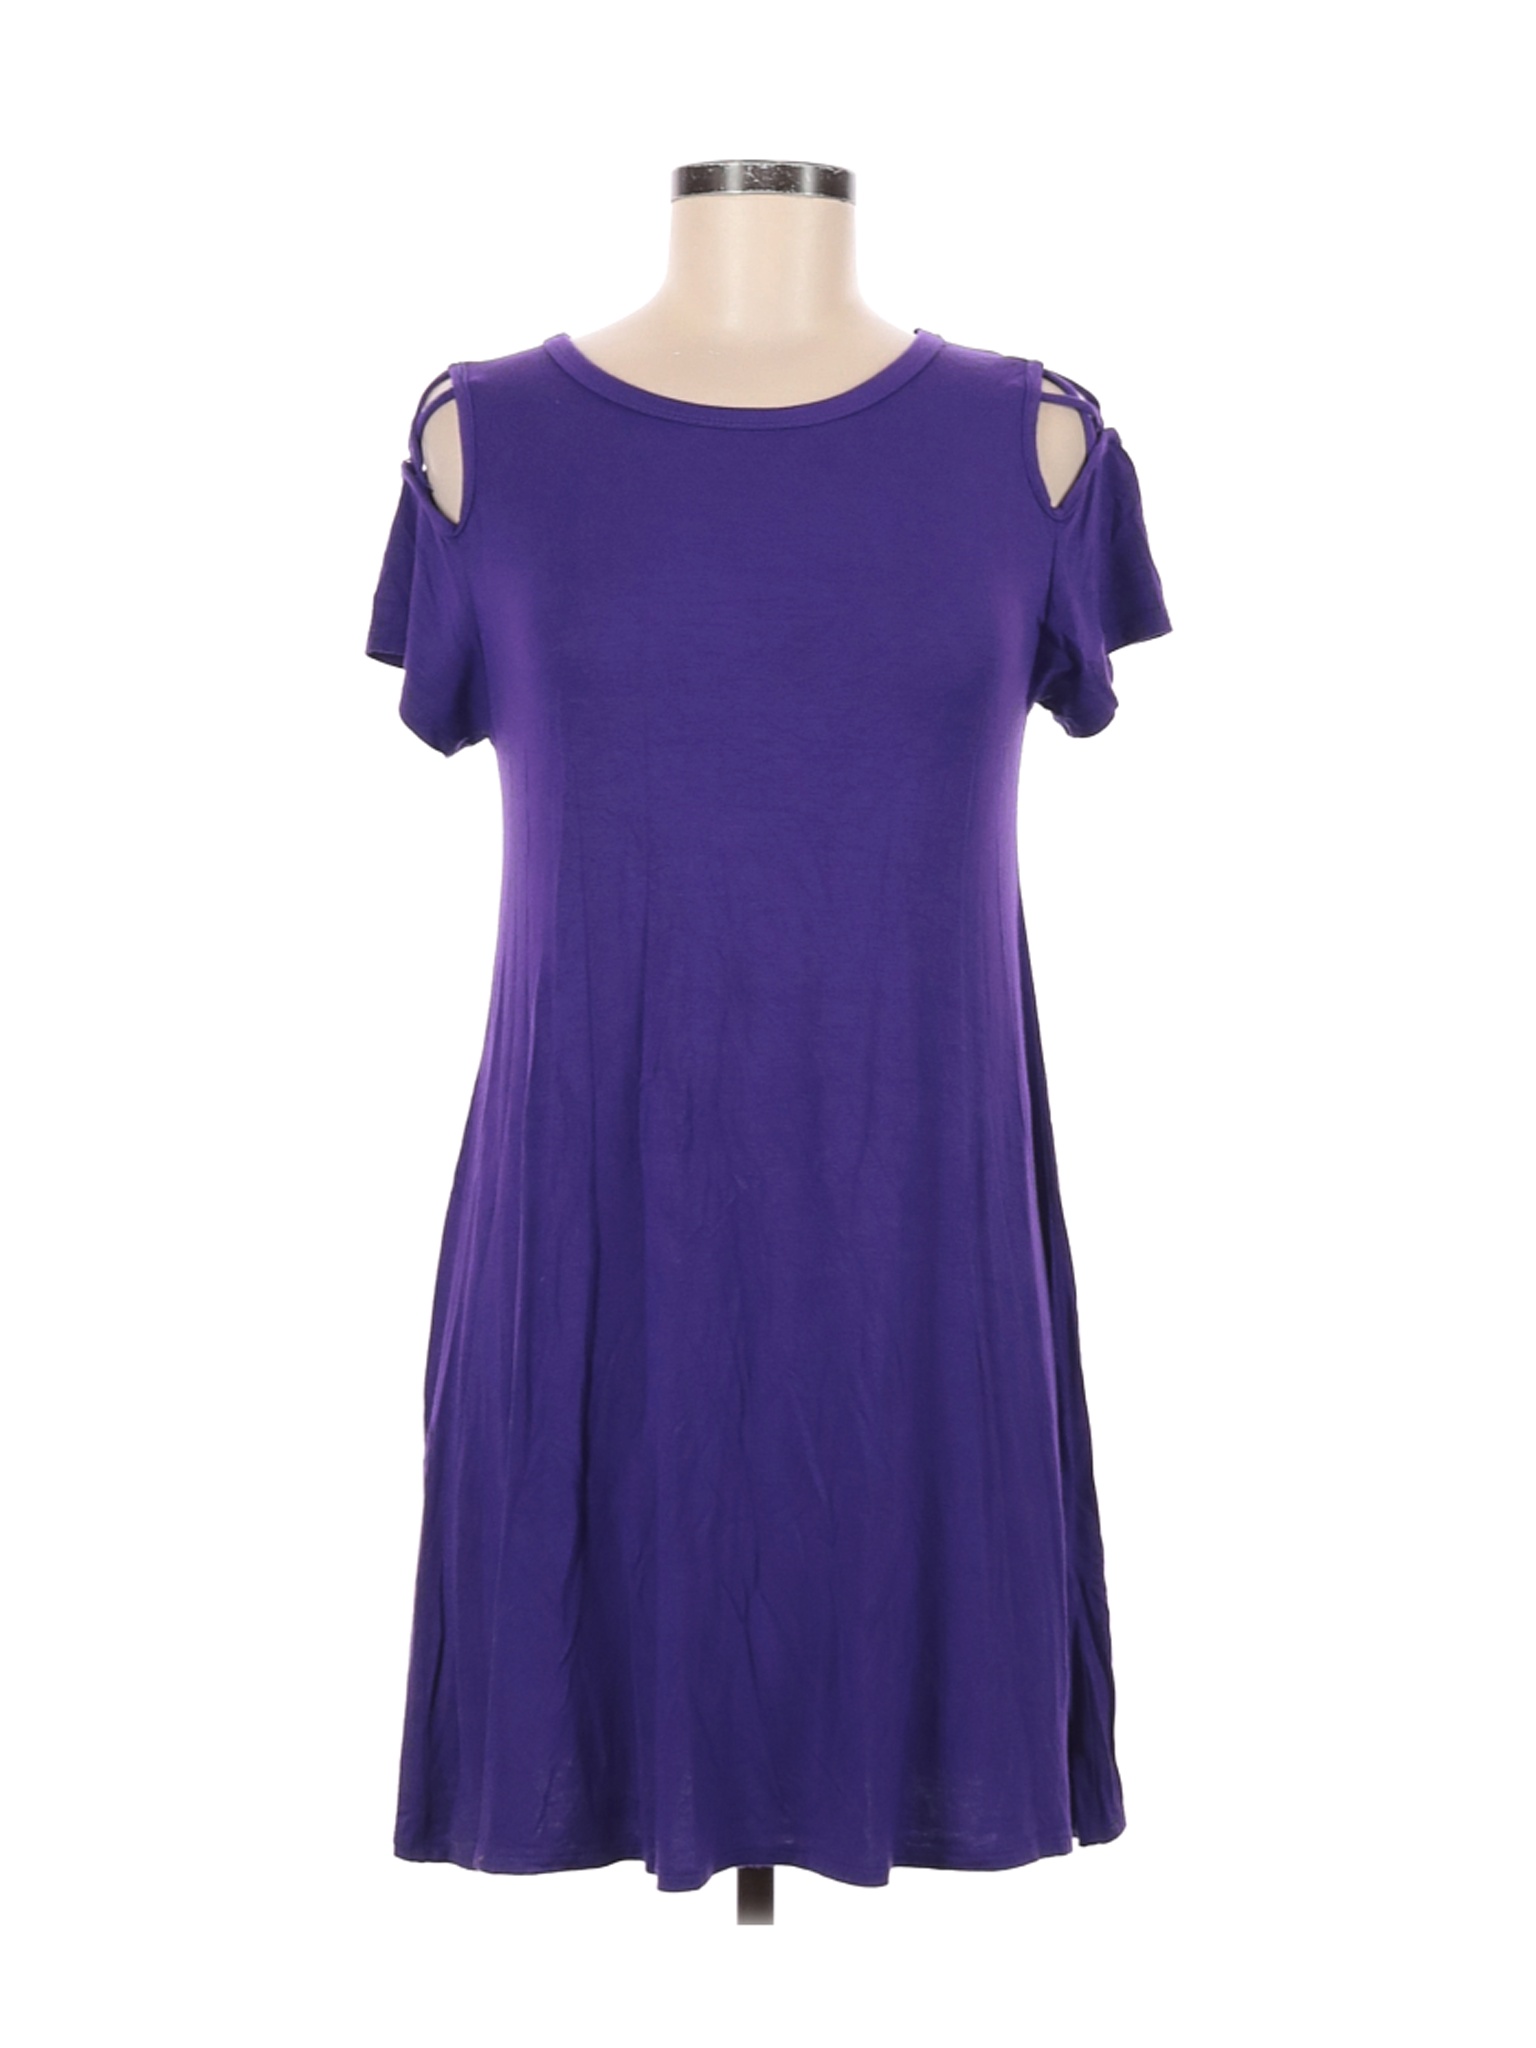 Alya Women Purple Casual Dress M | eBay